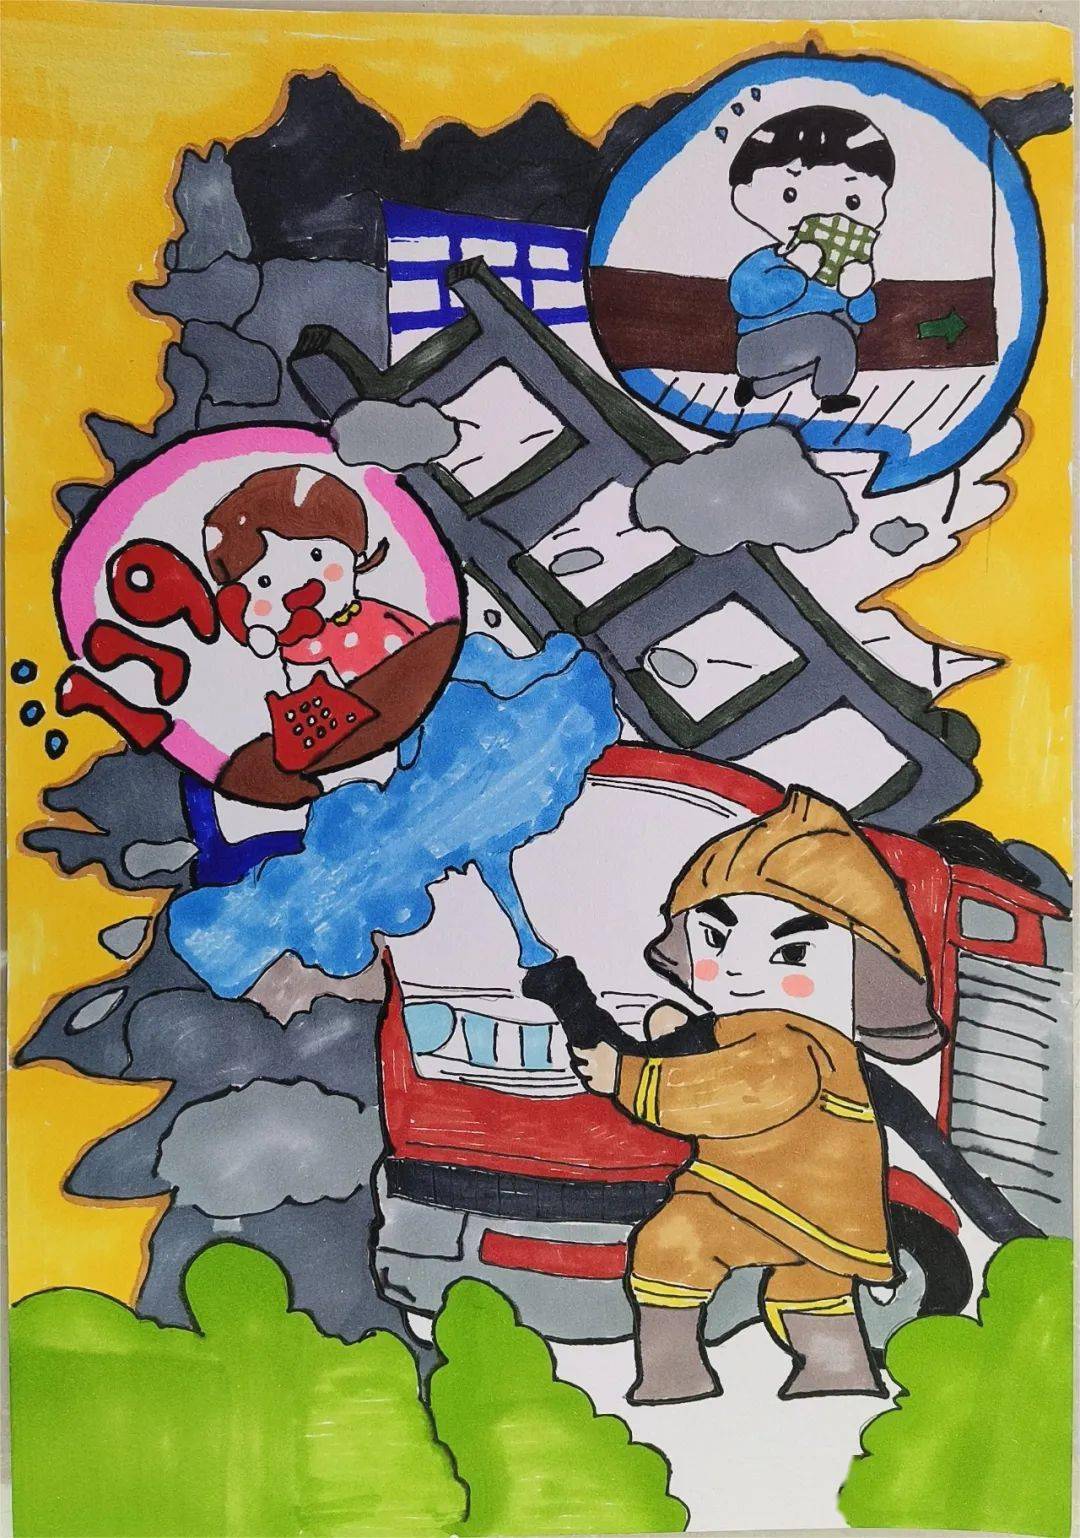 【消防宣传月】 我是小小消防员第八届儿童消防作文绘画大赛作品